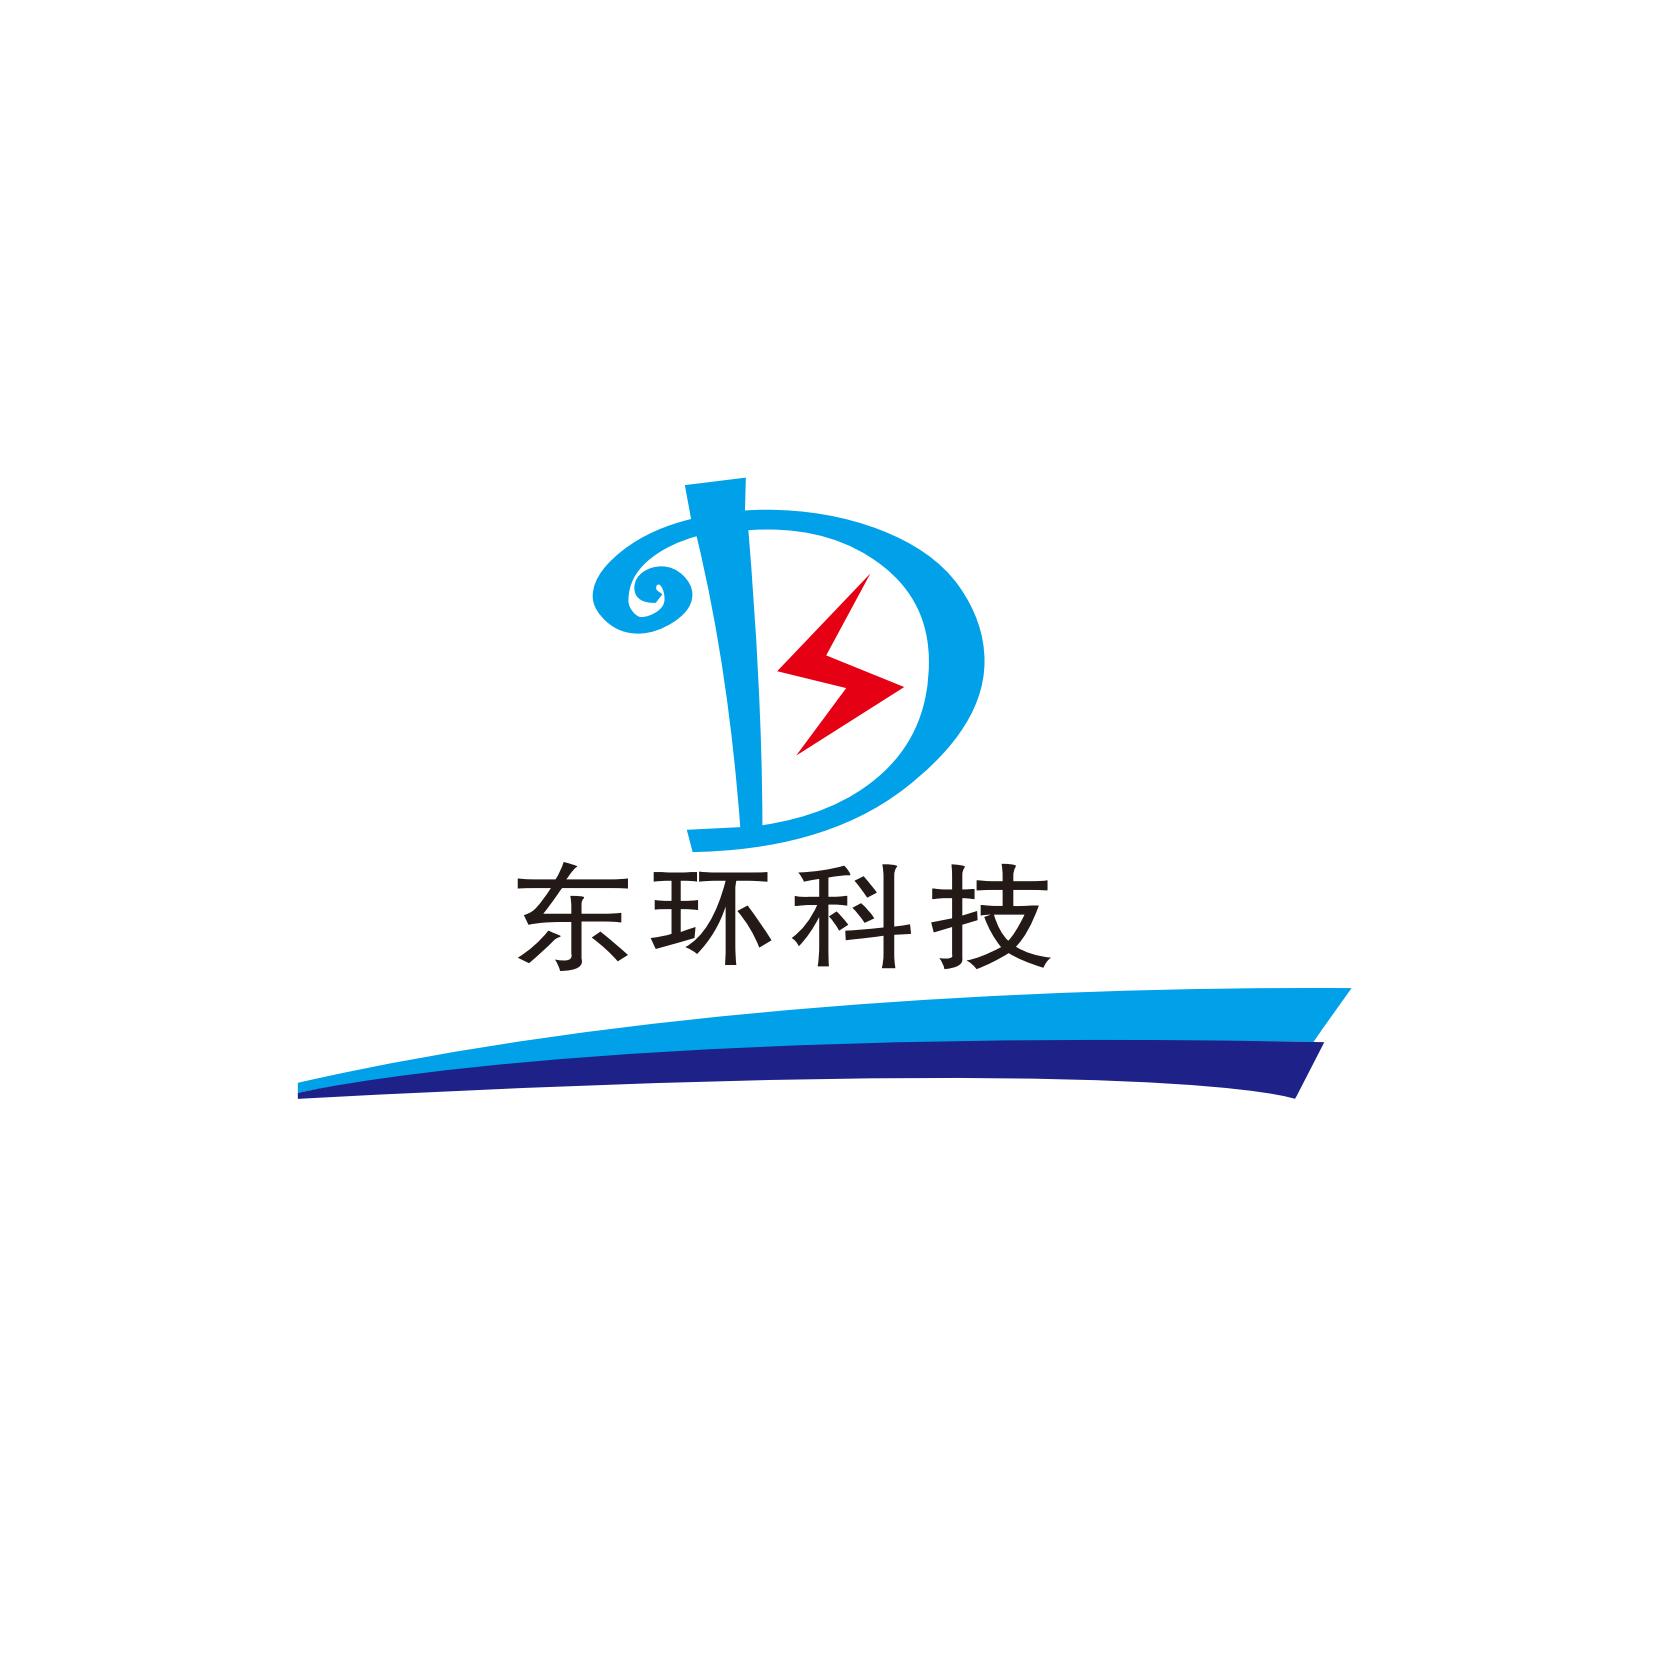 宁波东环电力科技有限公司;